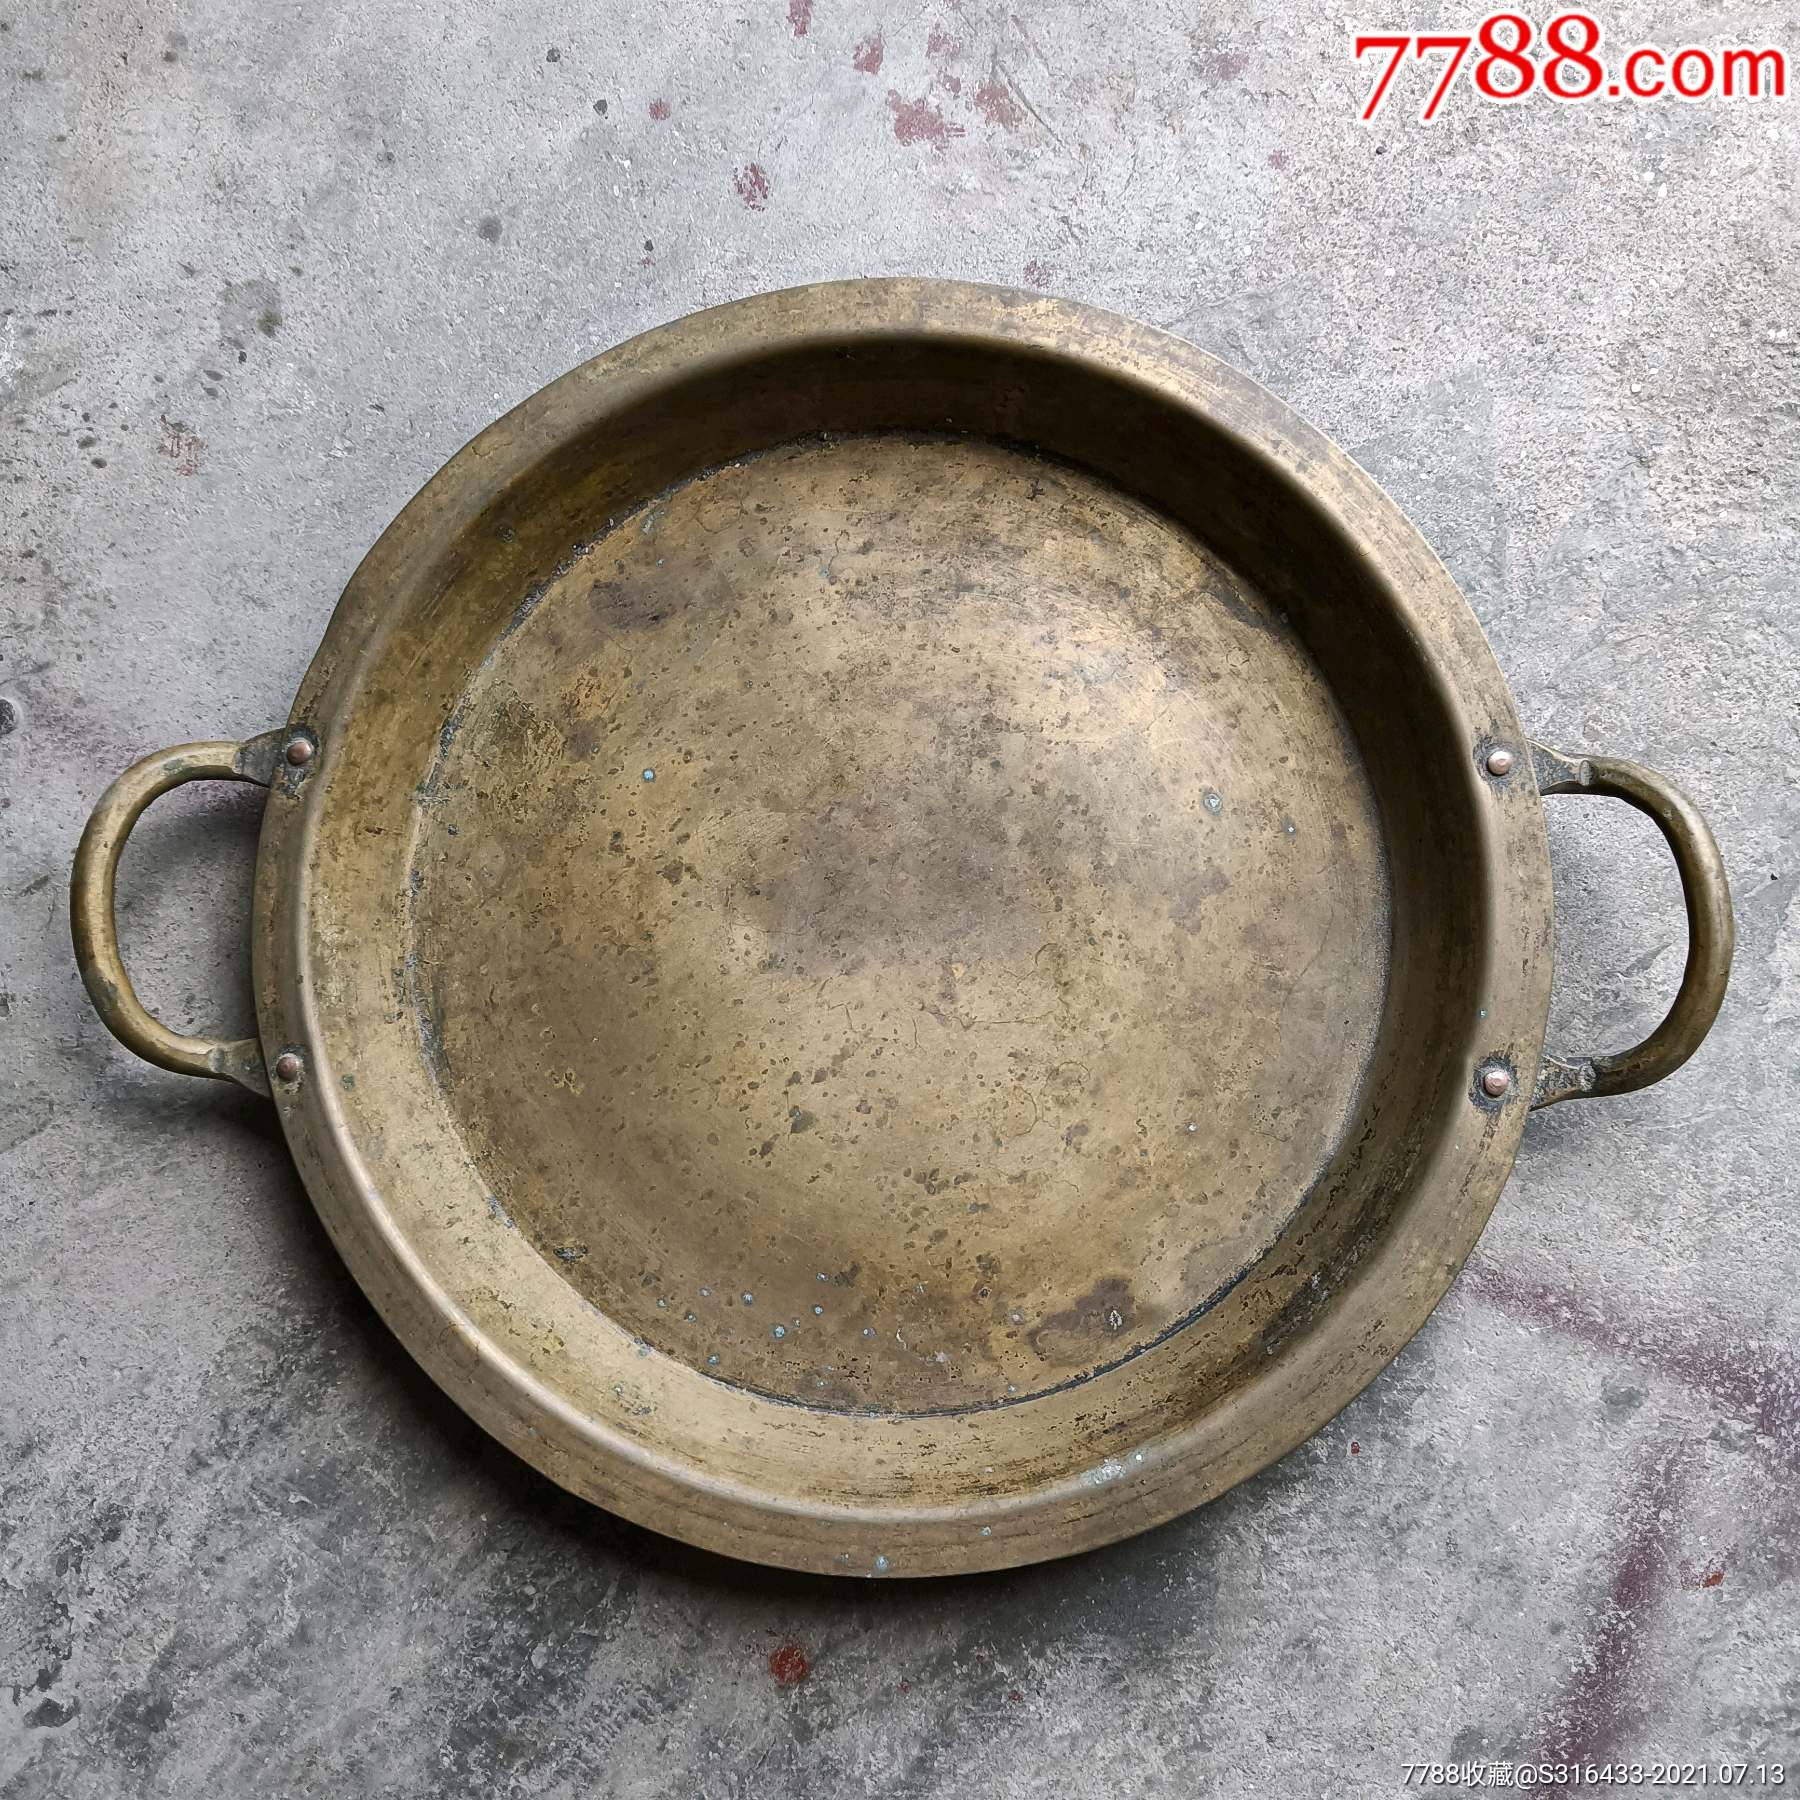 清代特大双系铜盆-价格:988元-se81397307-铜皿/盛具